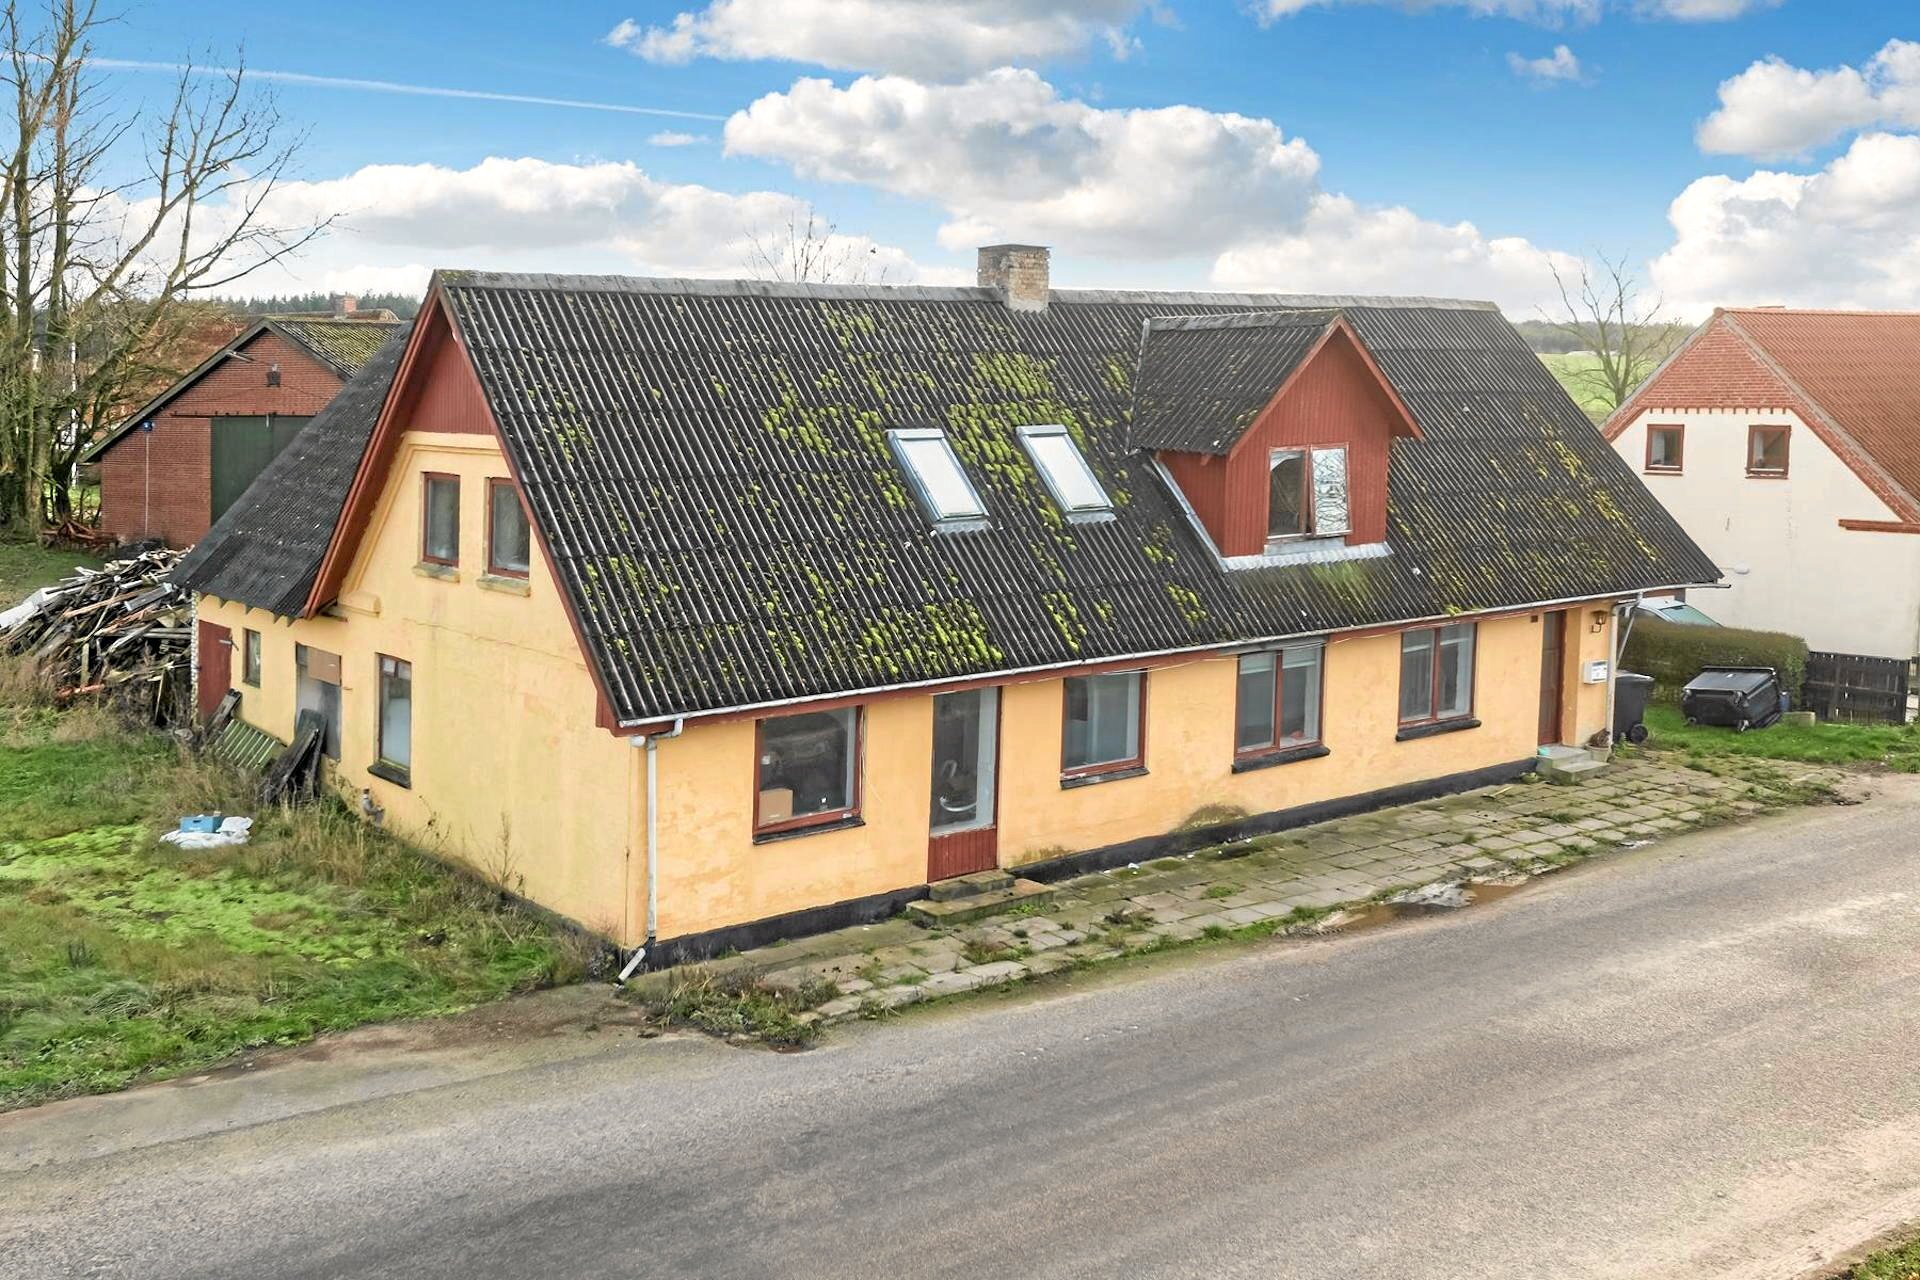 Danmarks billigste hus ligger i Vendsyssel: Så hurtigt blev det solgt